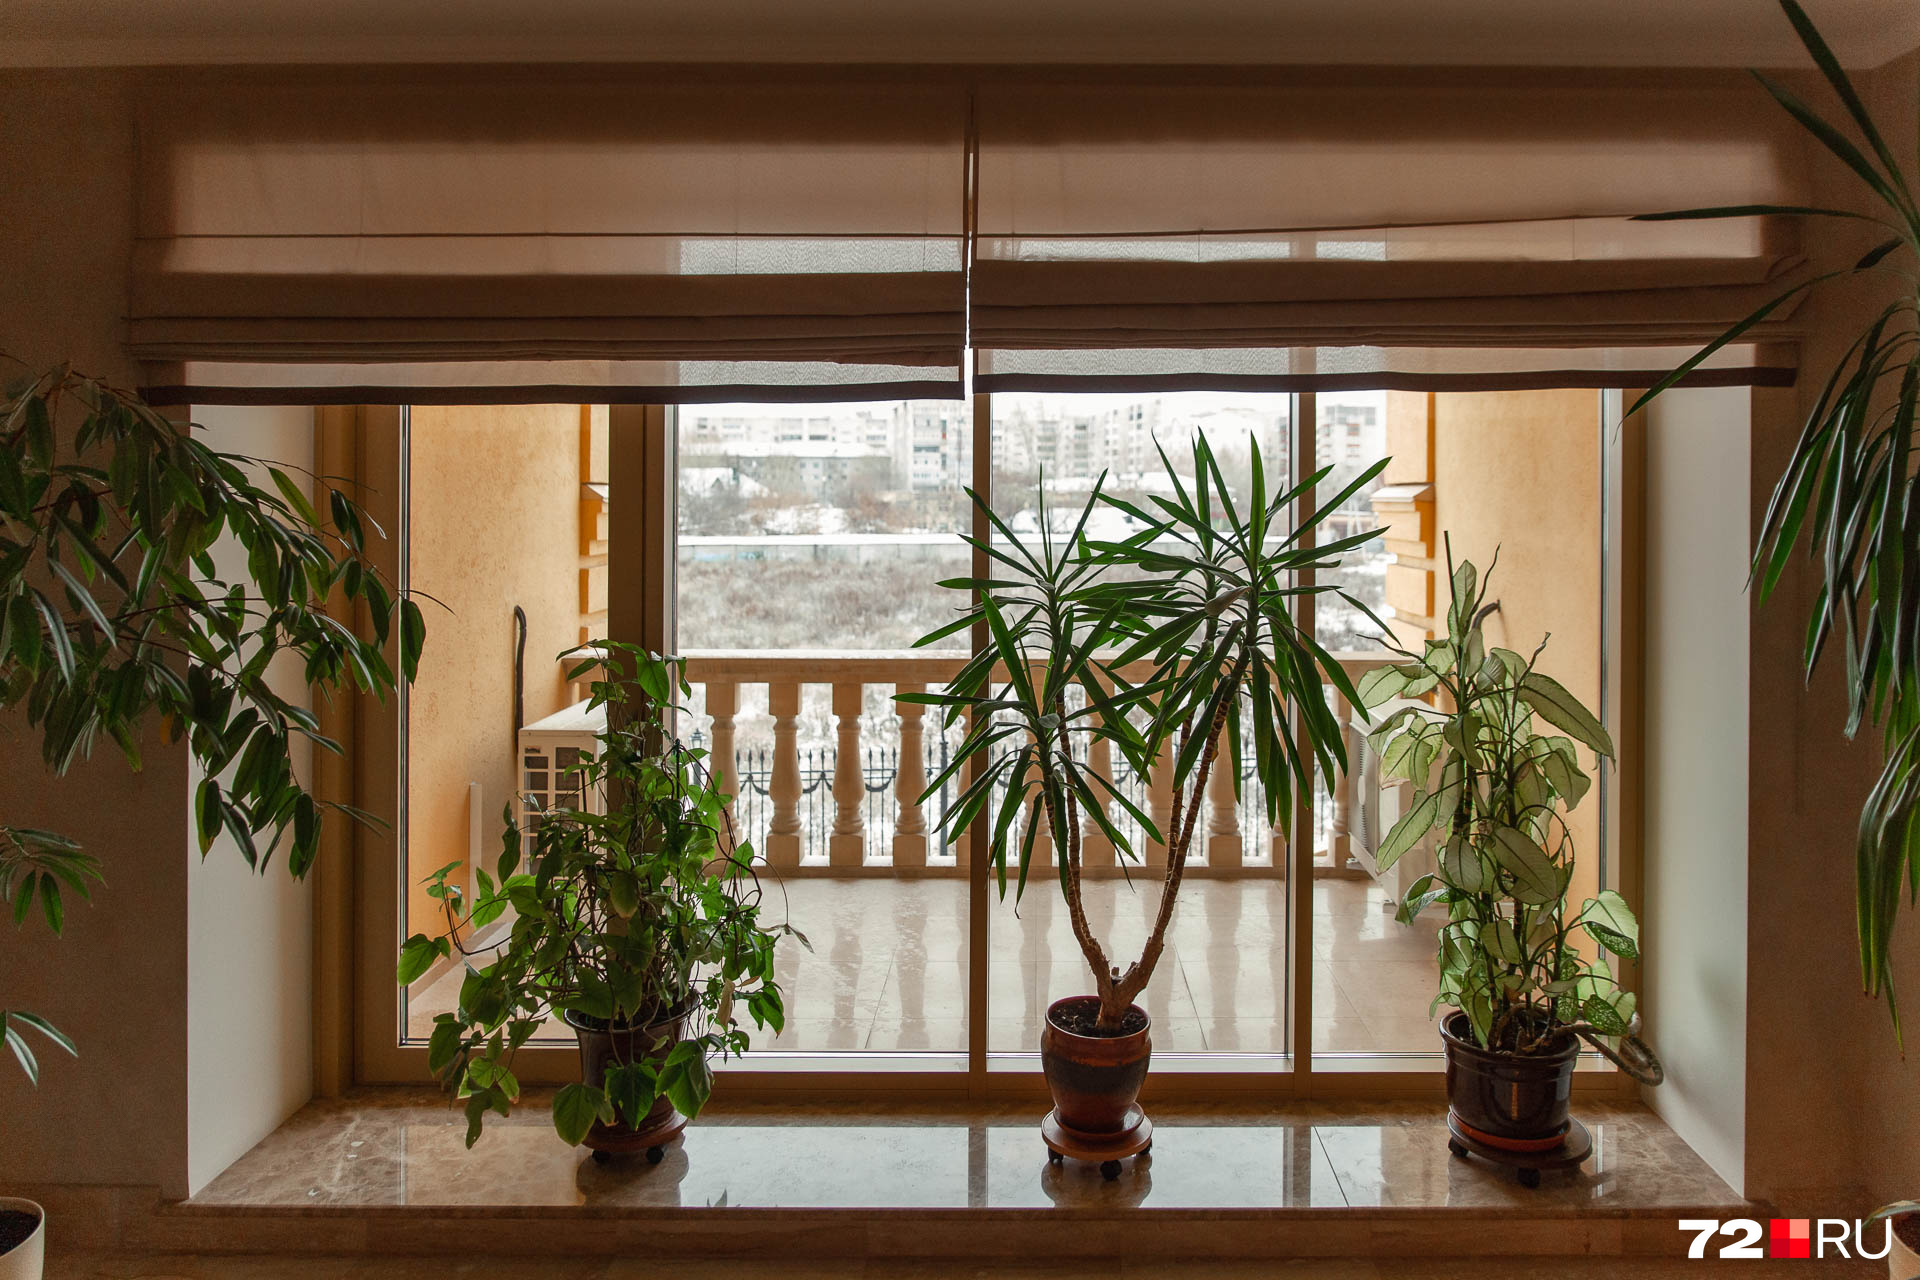 Завершаем виртуальную экскурсию по дому кадром с минималистичным балконом. О каком доме вы бы еще хотели узнать что-то интересное? Обязательно напишите об этом в комментариях